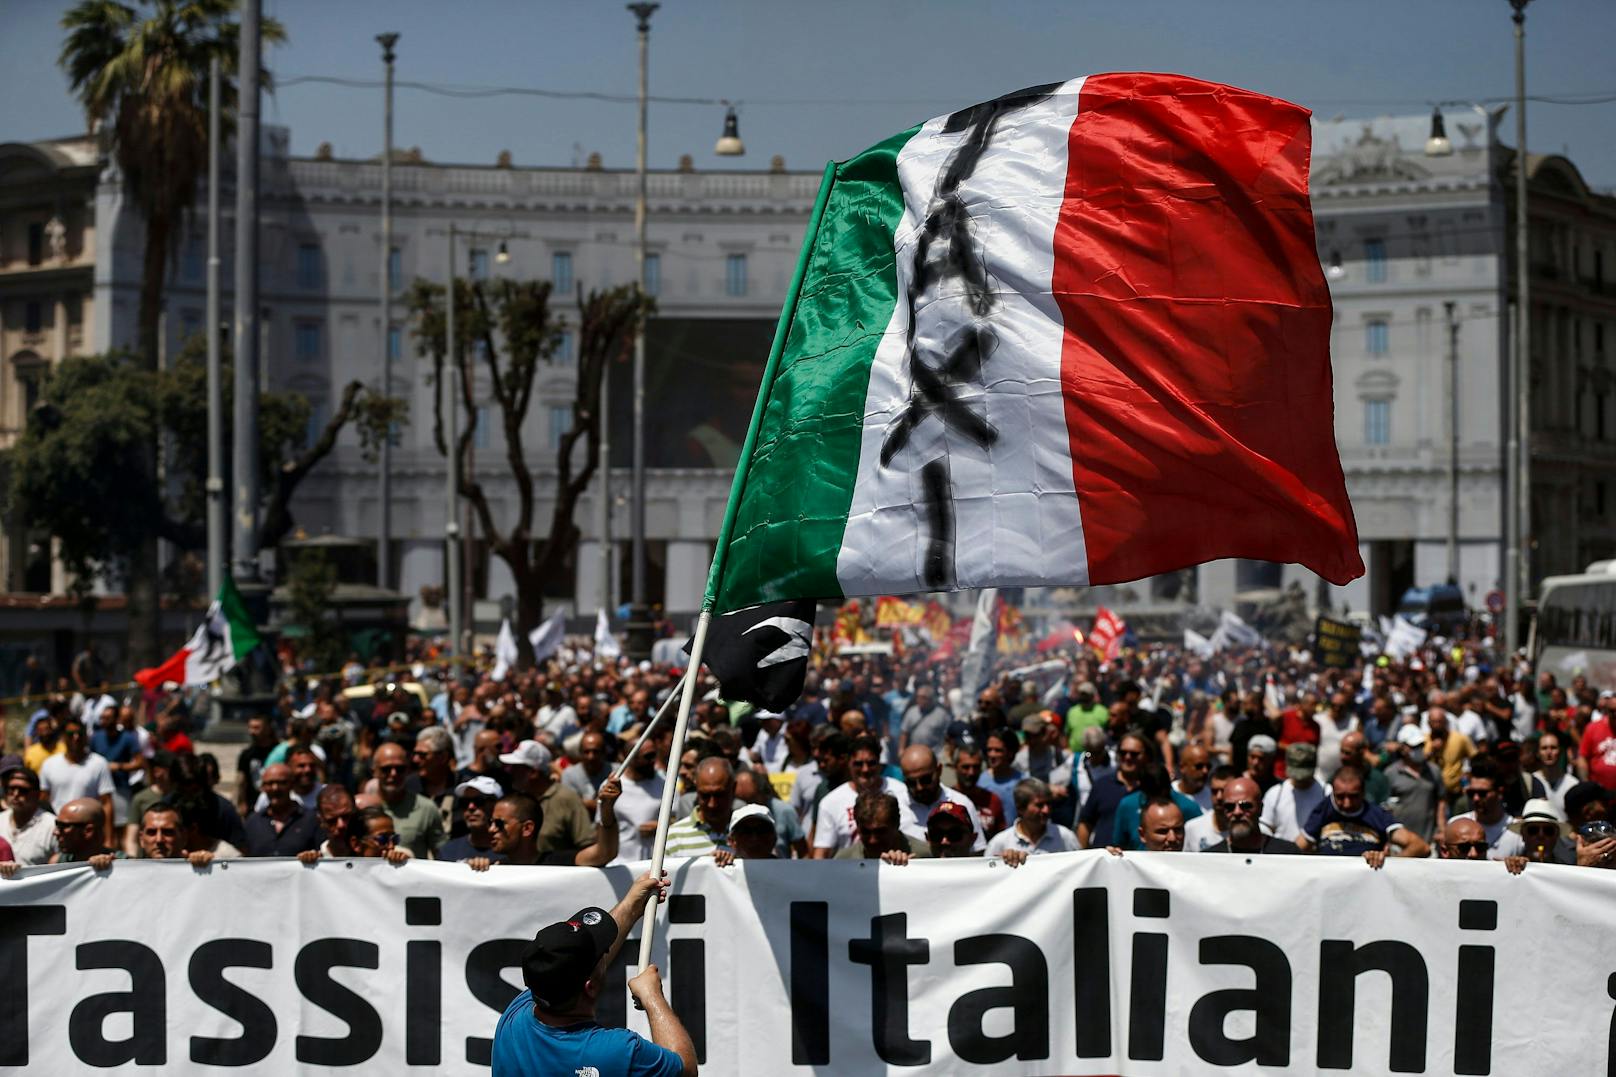 Der TAXI Streik in Rom sorgt für weltweite Schlagzeilen. Am Sonntag schließen sich Piloten und&nbsp;Flugbegleiter dem Streik an.